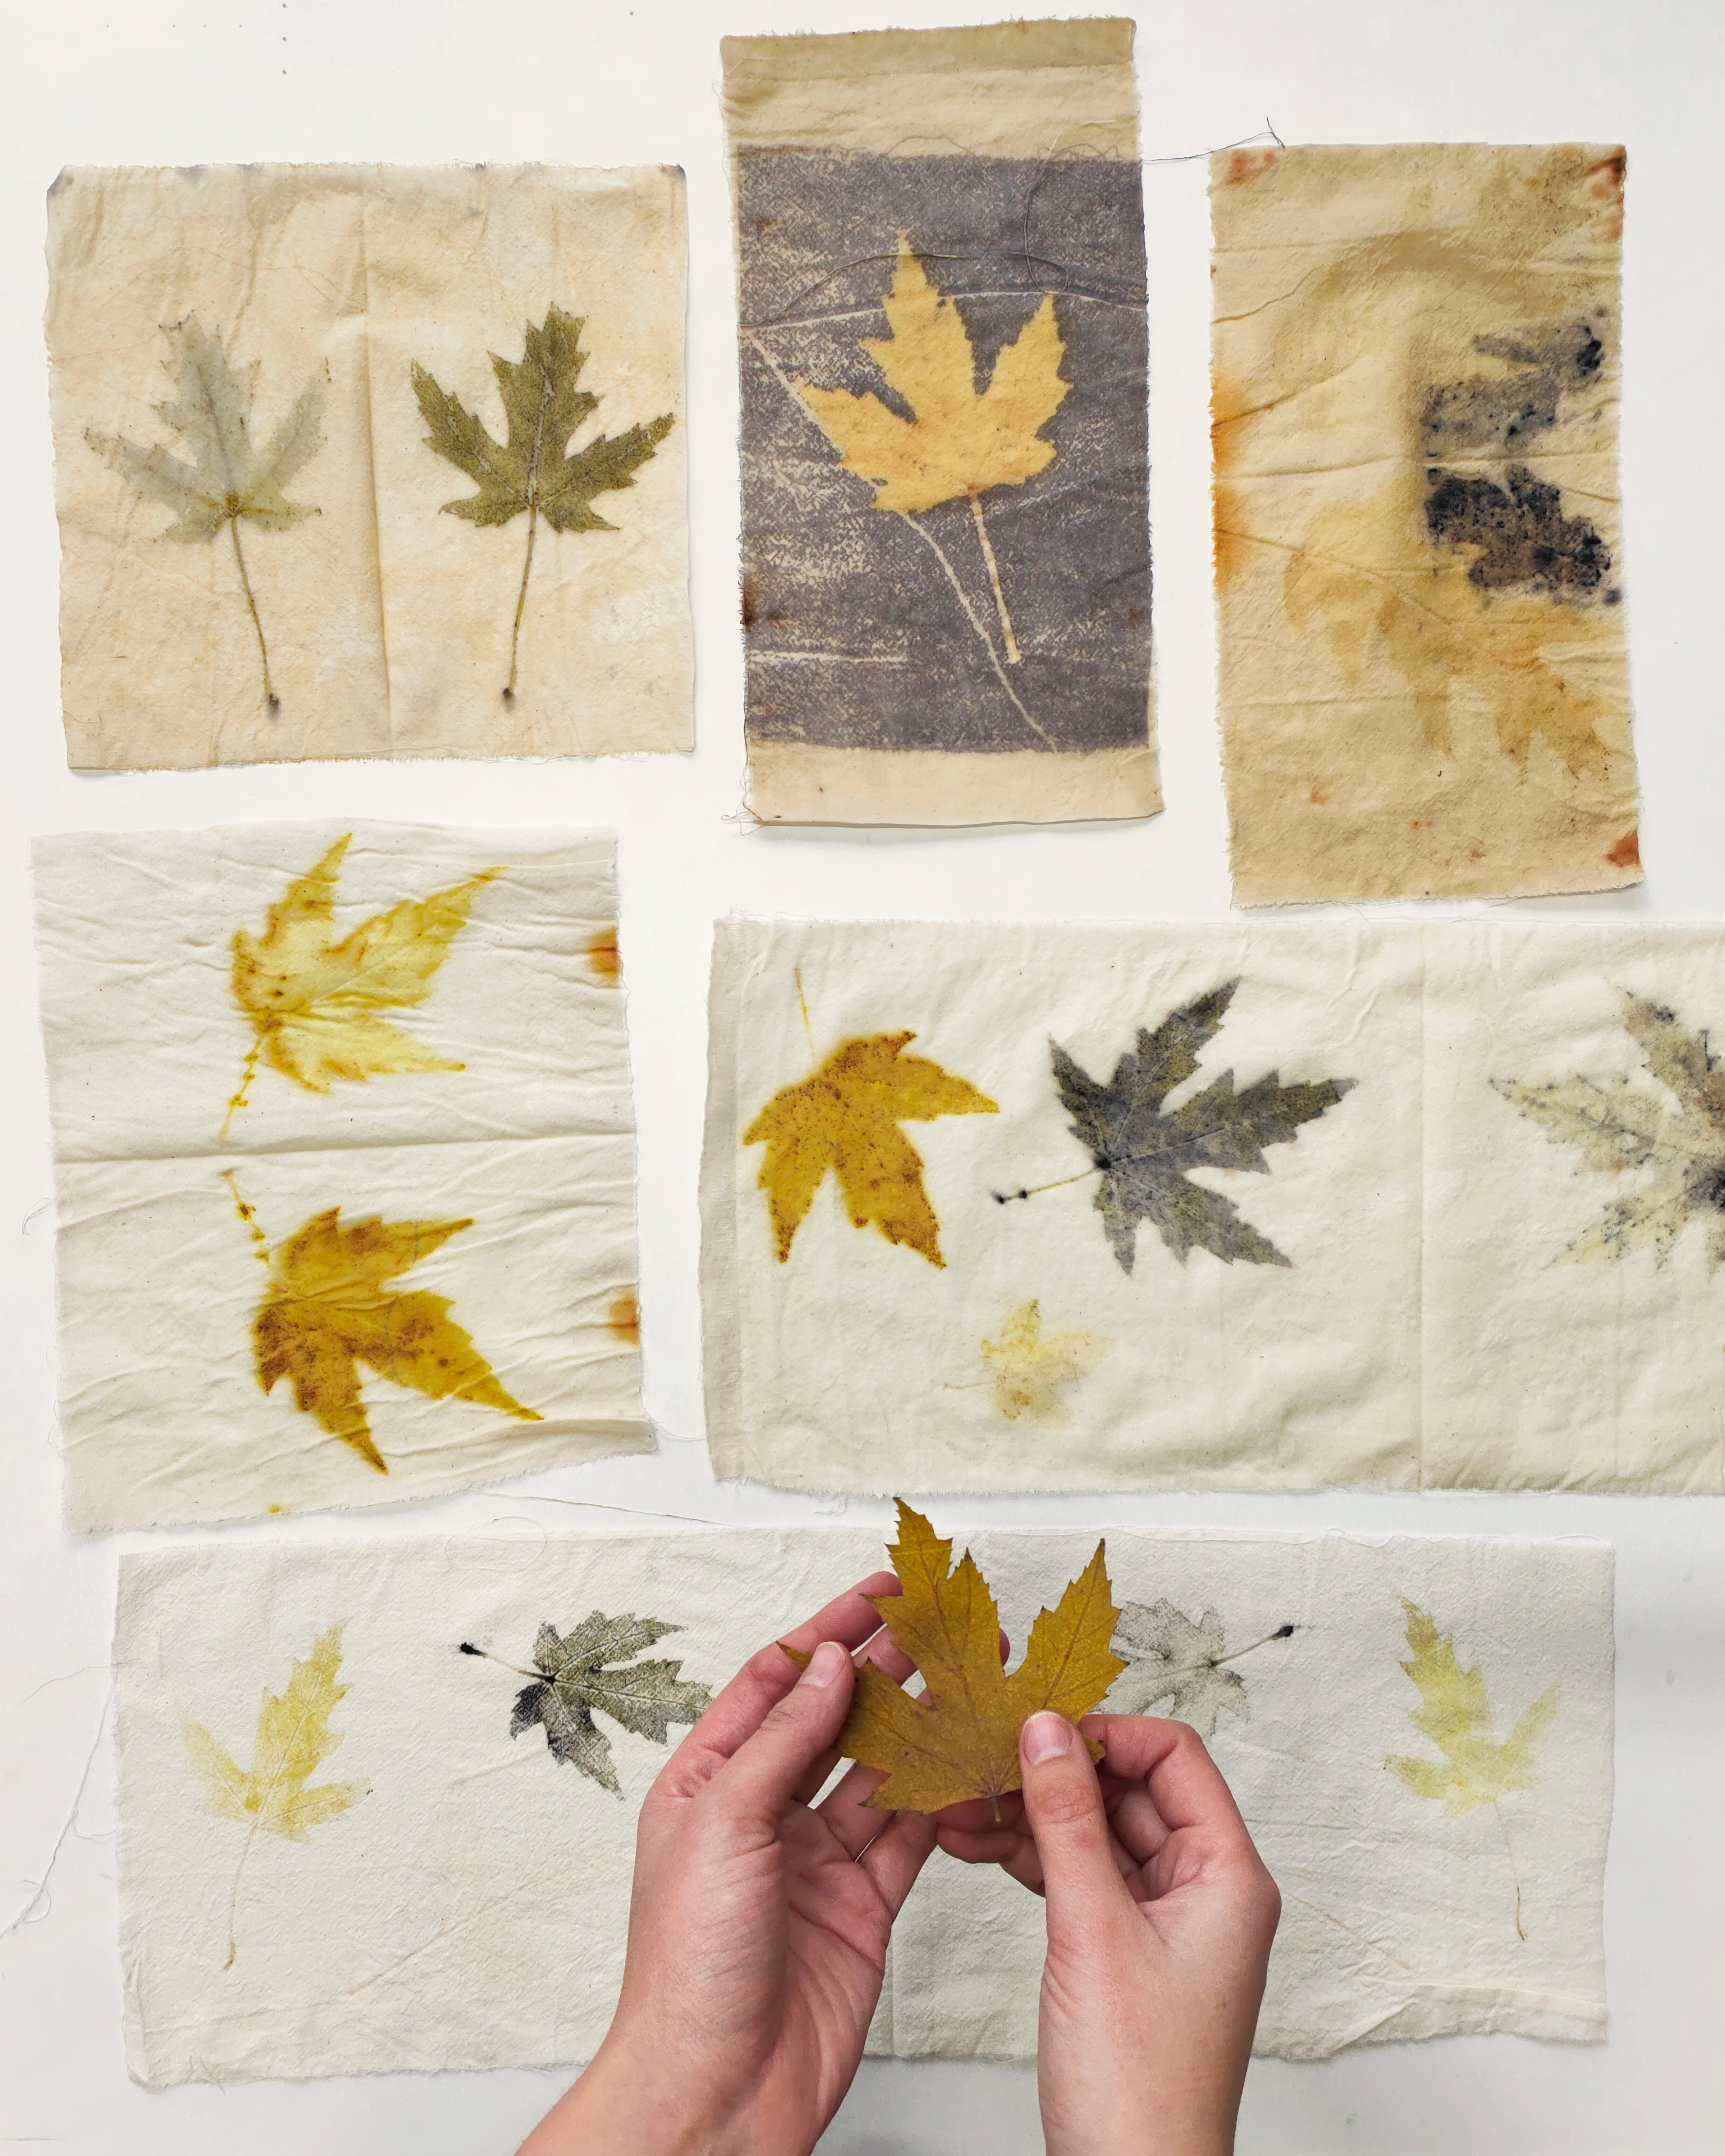 Eco-printing with leaves on fabric – Kaliko